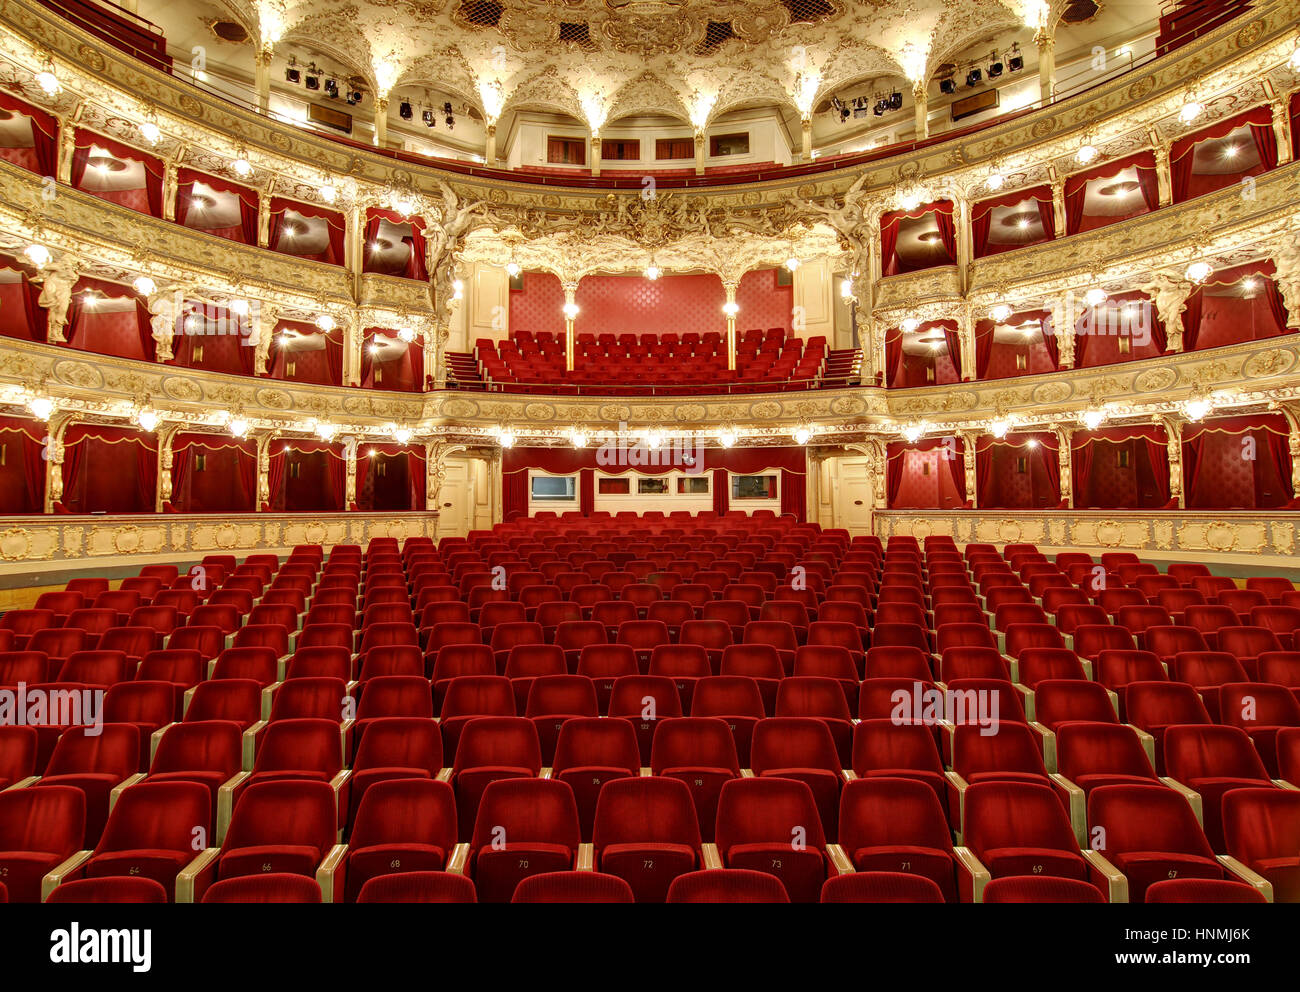 Auditorium interiore del grande teatro - Opera, Praga, Repubblica Ceca Foto Stock